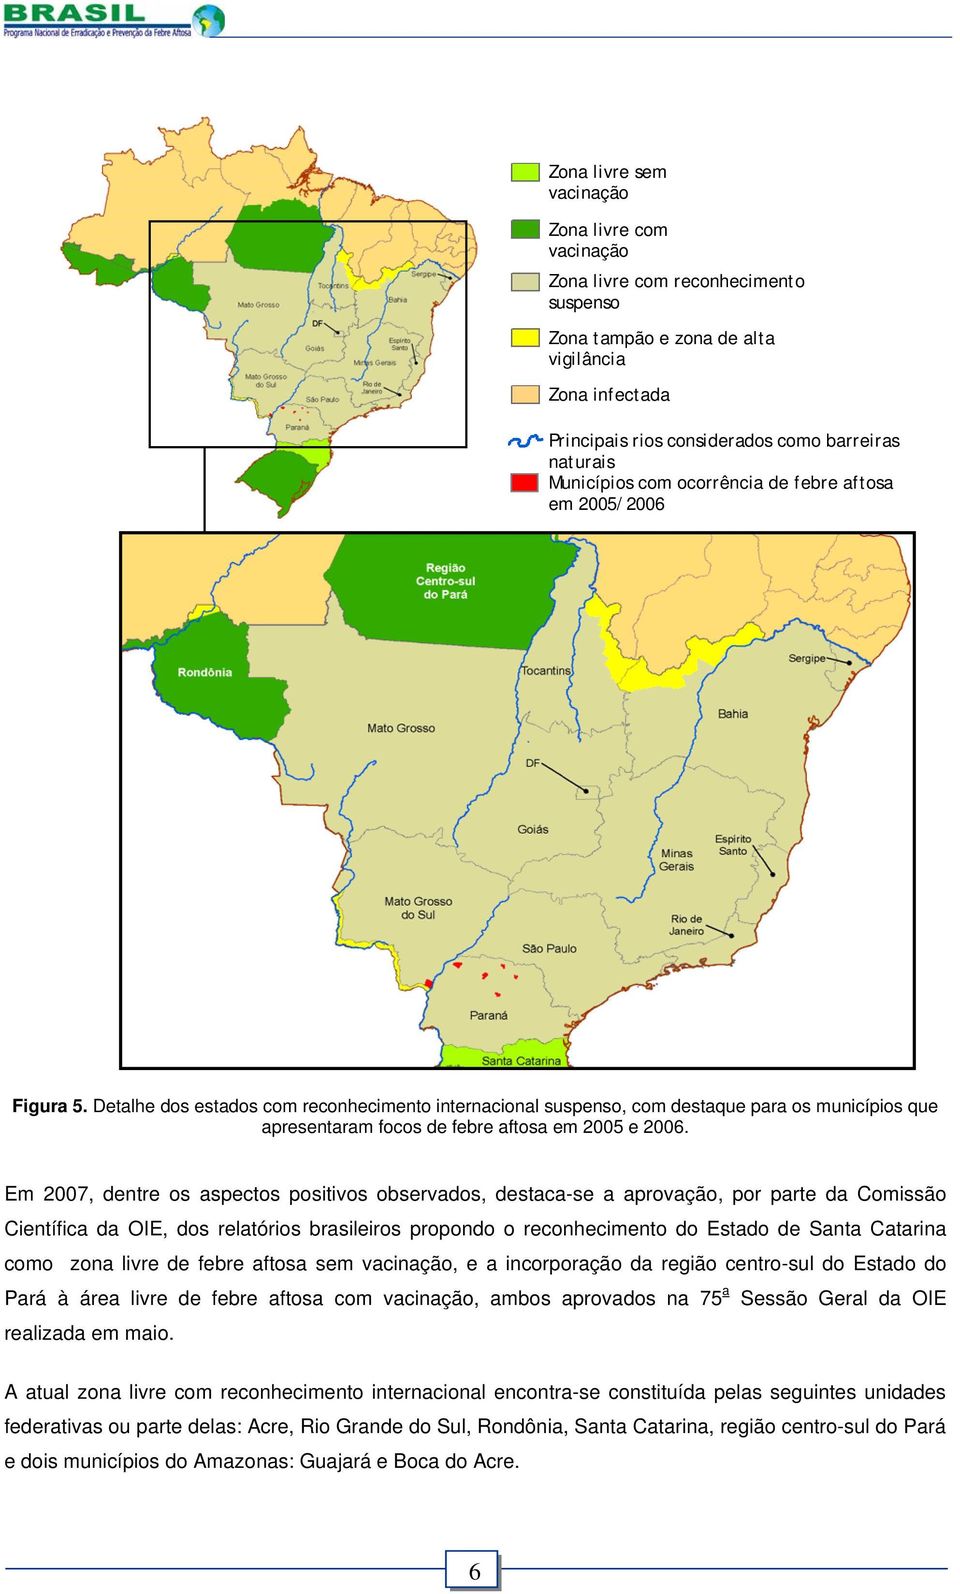 Detalhe dos estados com reconhecimento internacional suspenso, com destaque para os municípios que apresentaram focos de febre aftosa em 2005 e 2006.